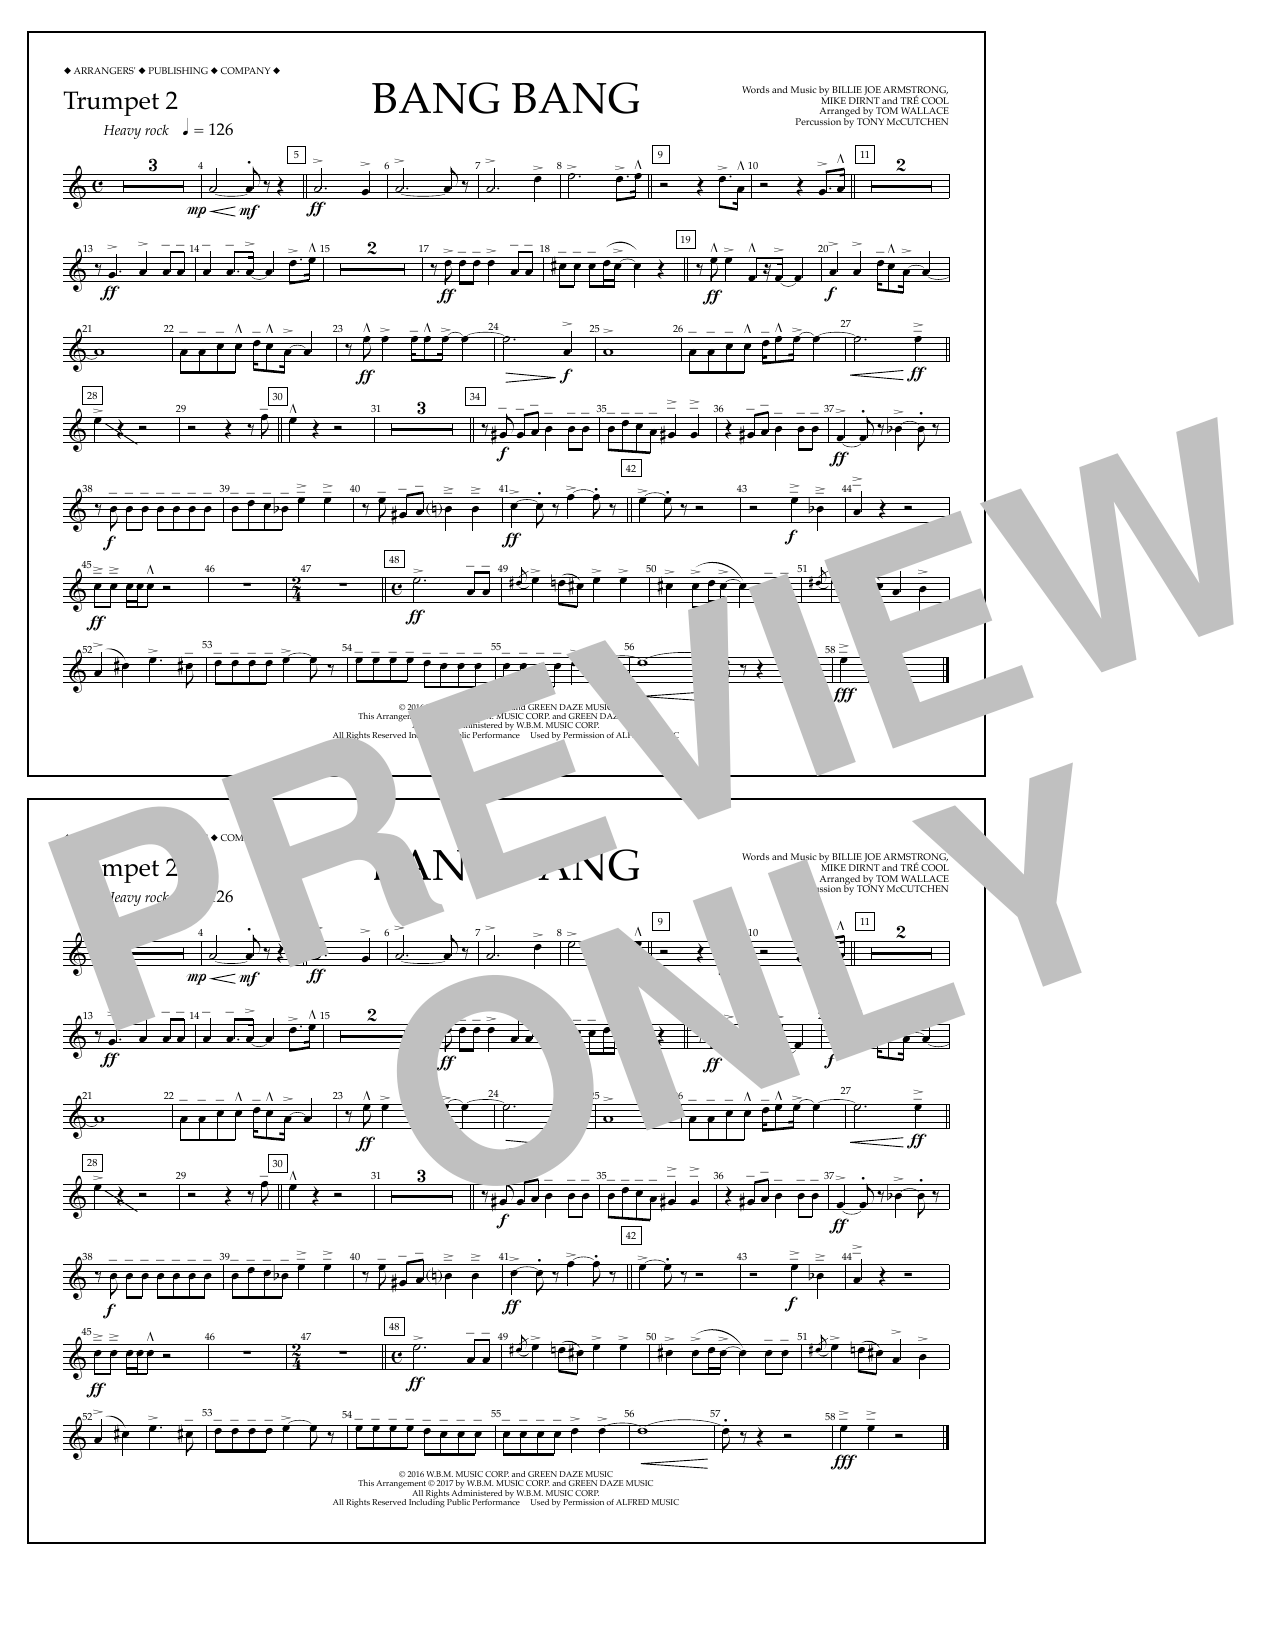 Tom Wallace Bang Bang - Trumpet 2 Sheet Music Notes & Chords for Marching Band - Download or Print PDF